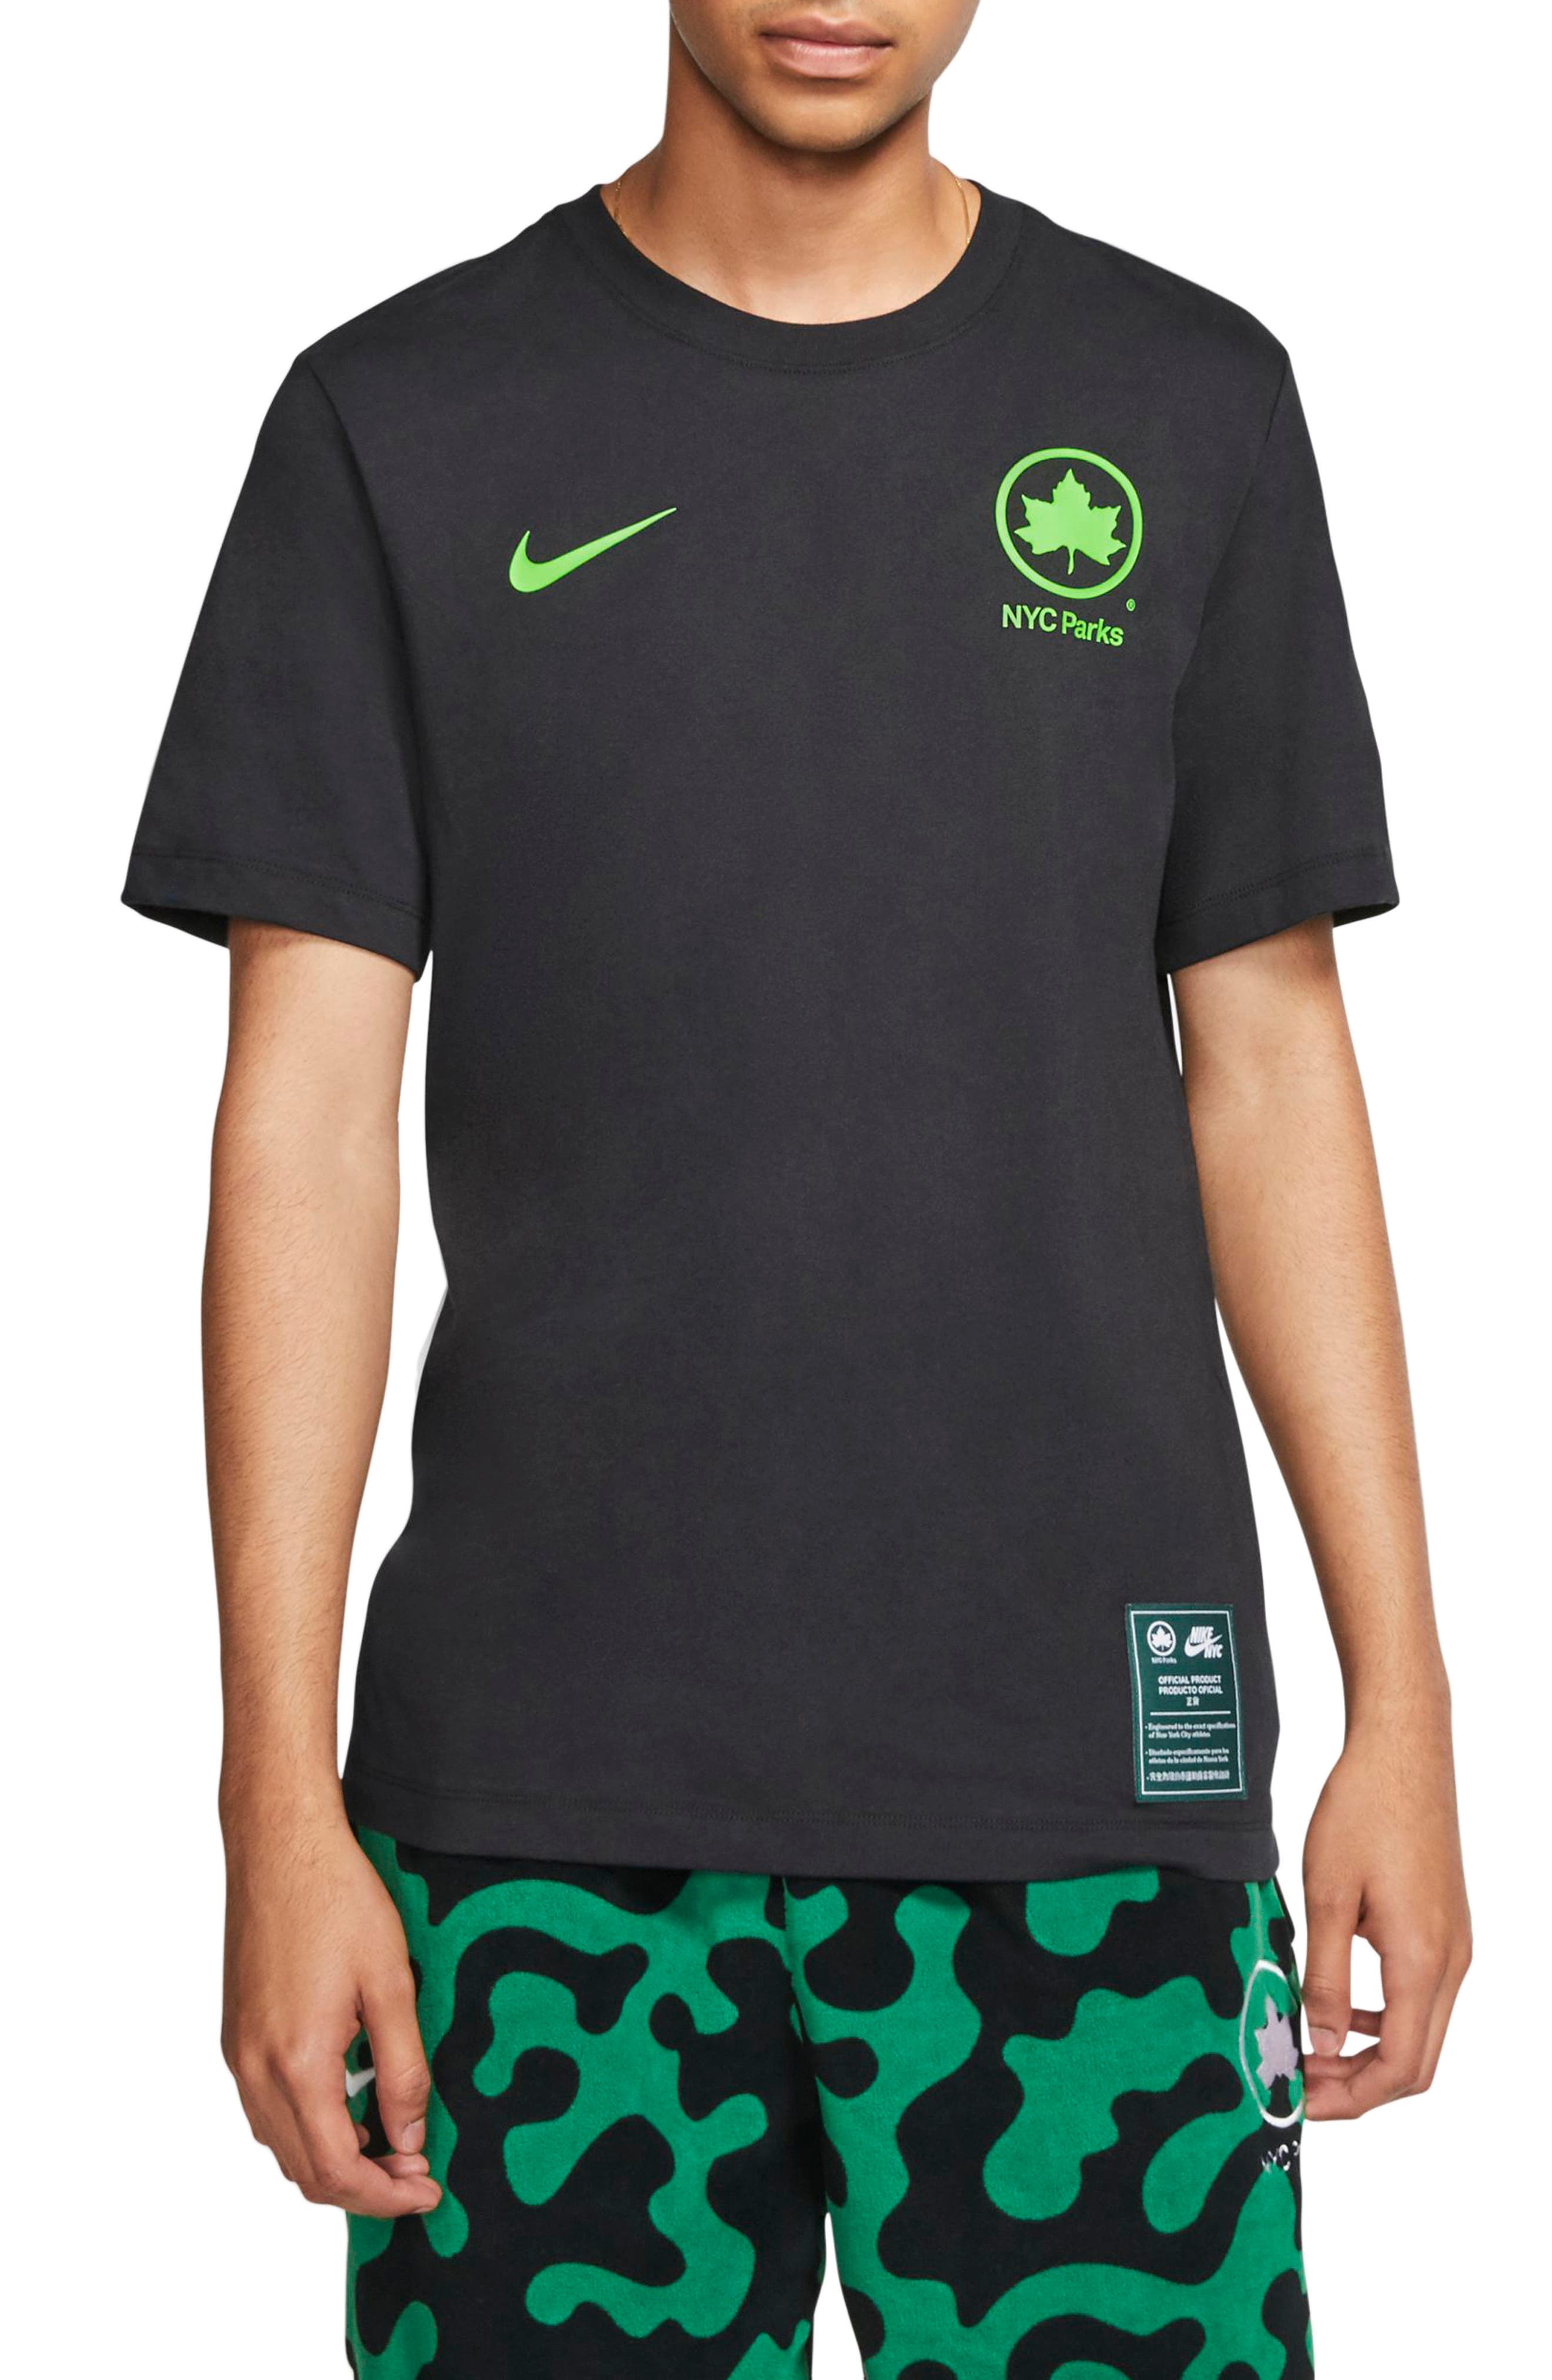 Nike Sportswear NYC Parks T-Shirt 